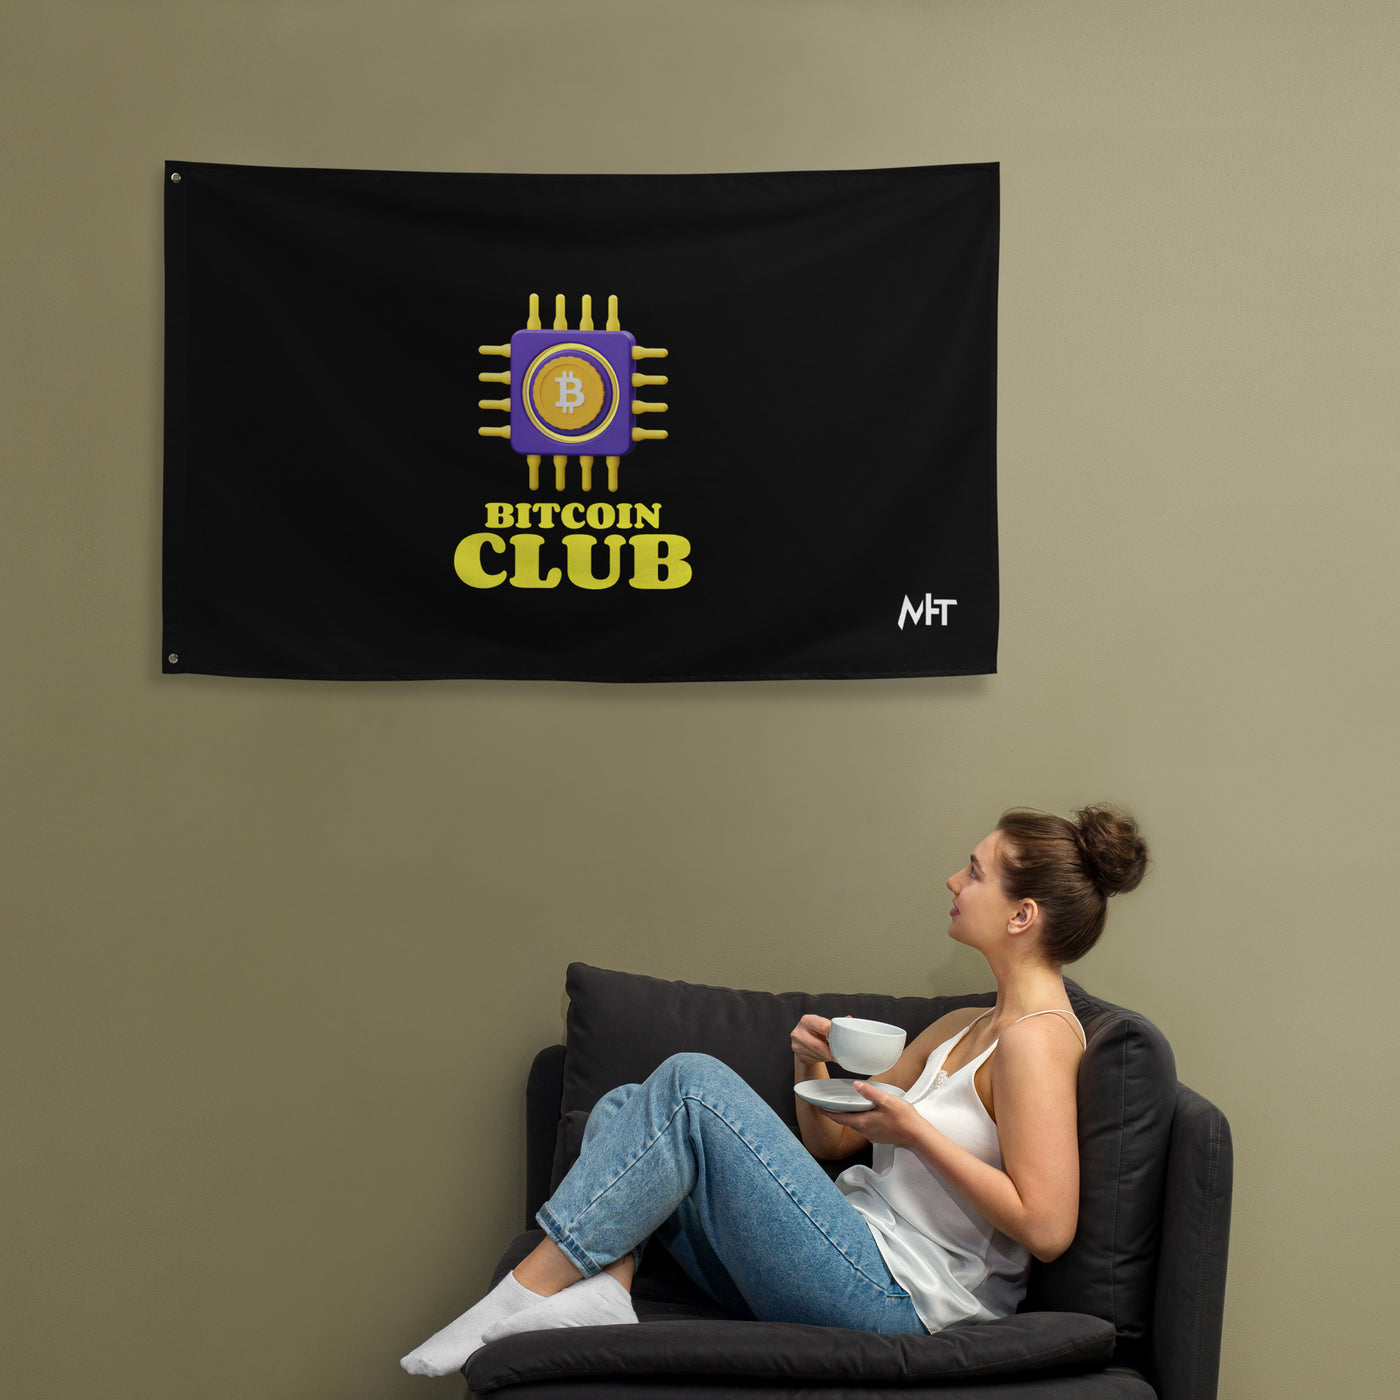 Bitcoin Club V3 Flag